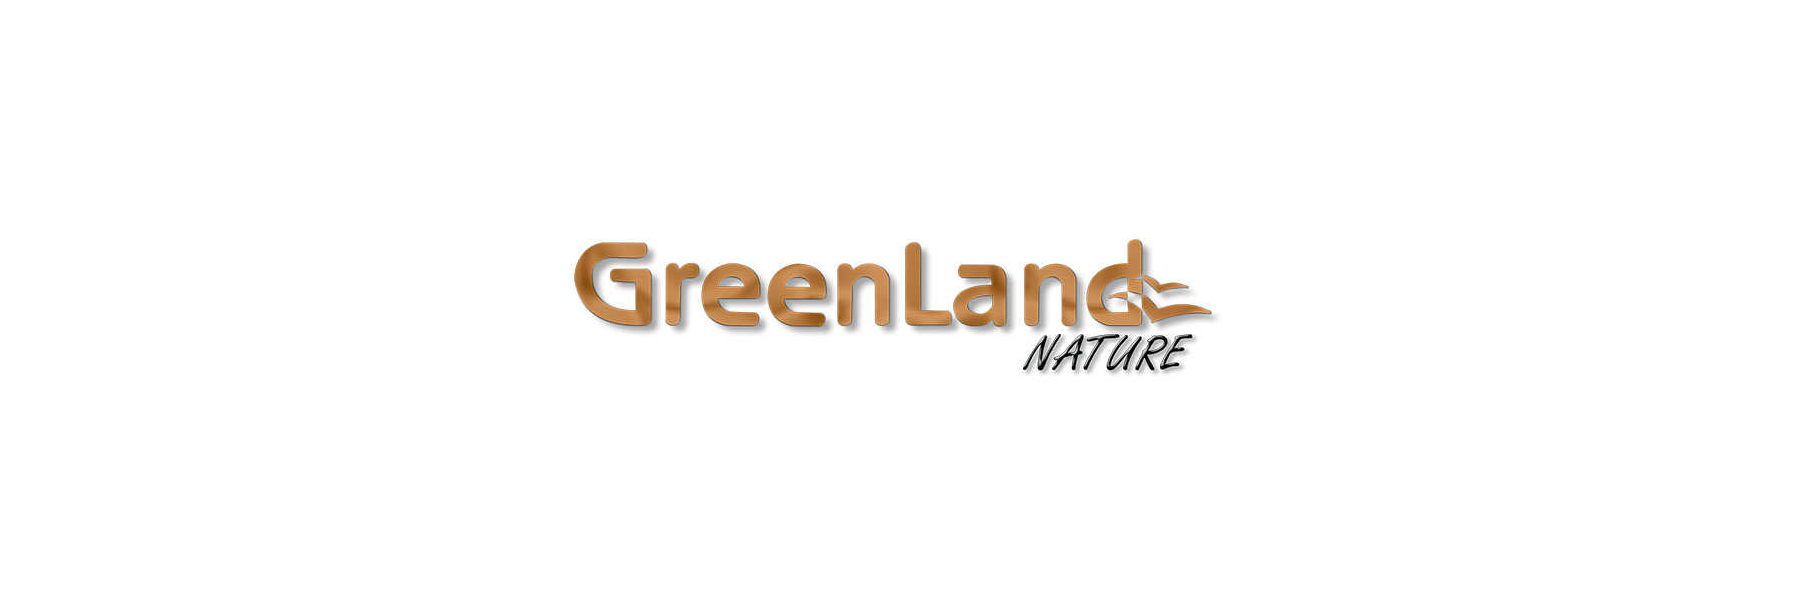 Greenland Nature Lederwaren natürlich Geldboerse - Gel gegerbt Online